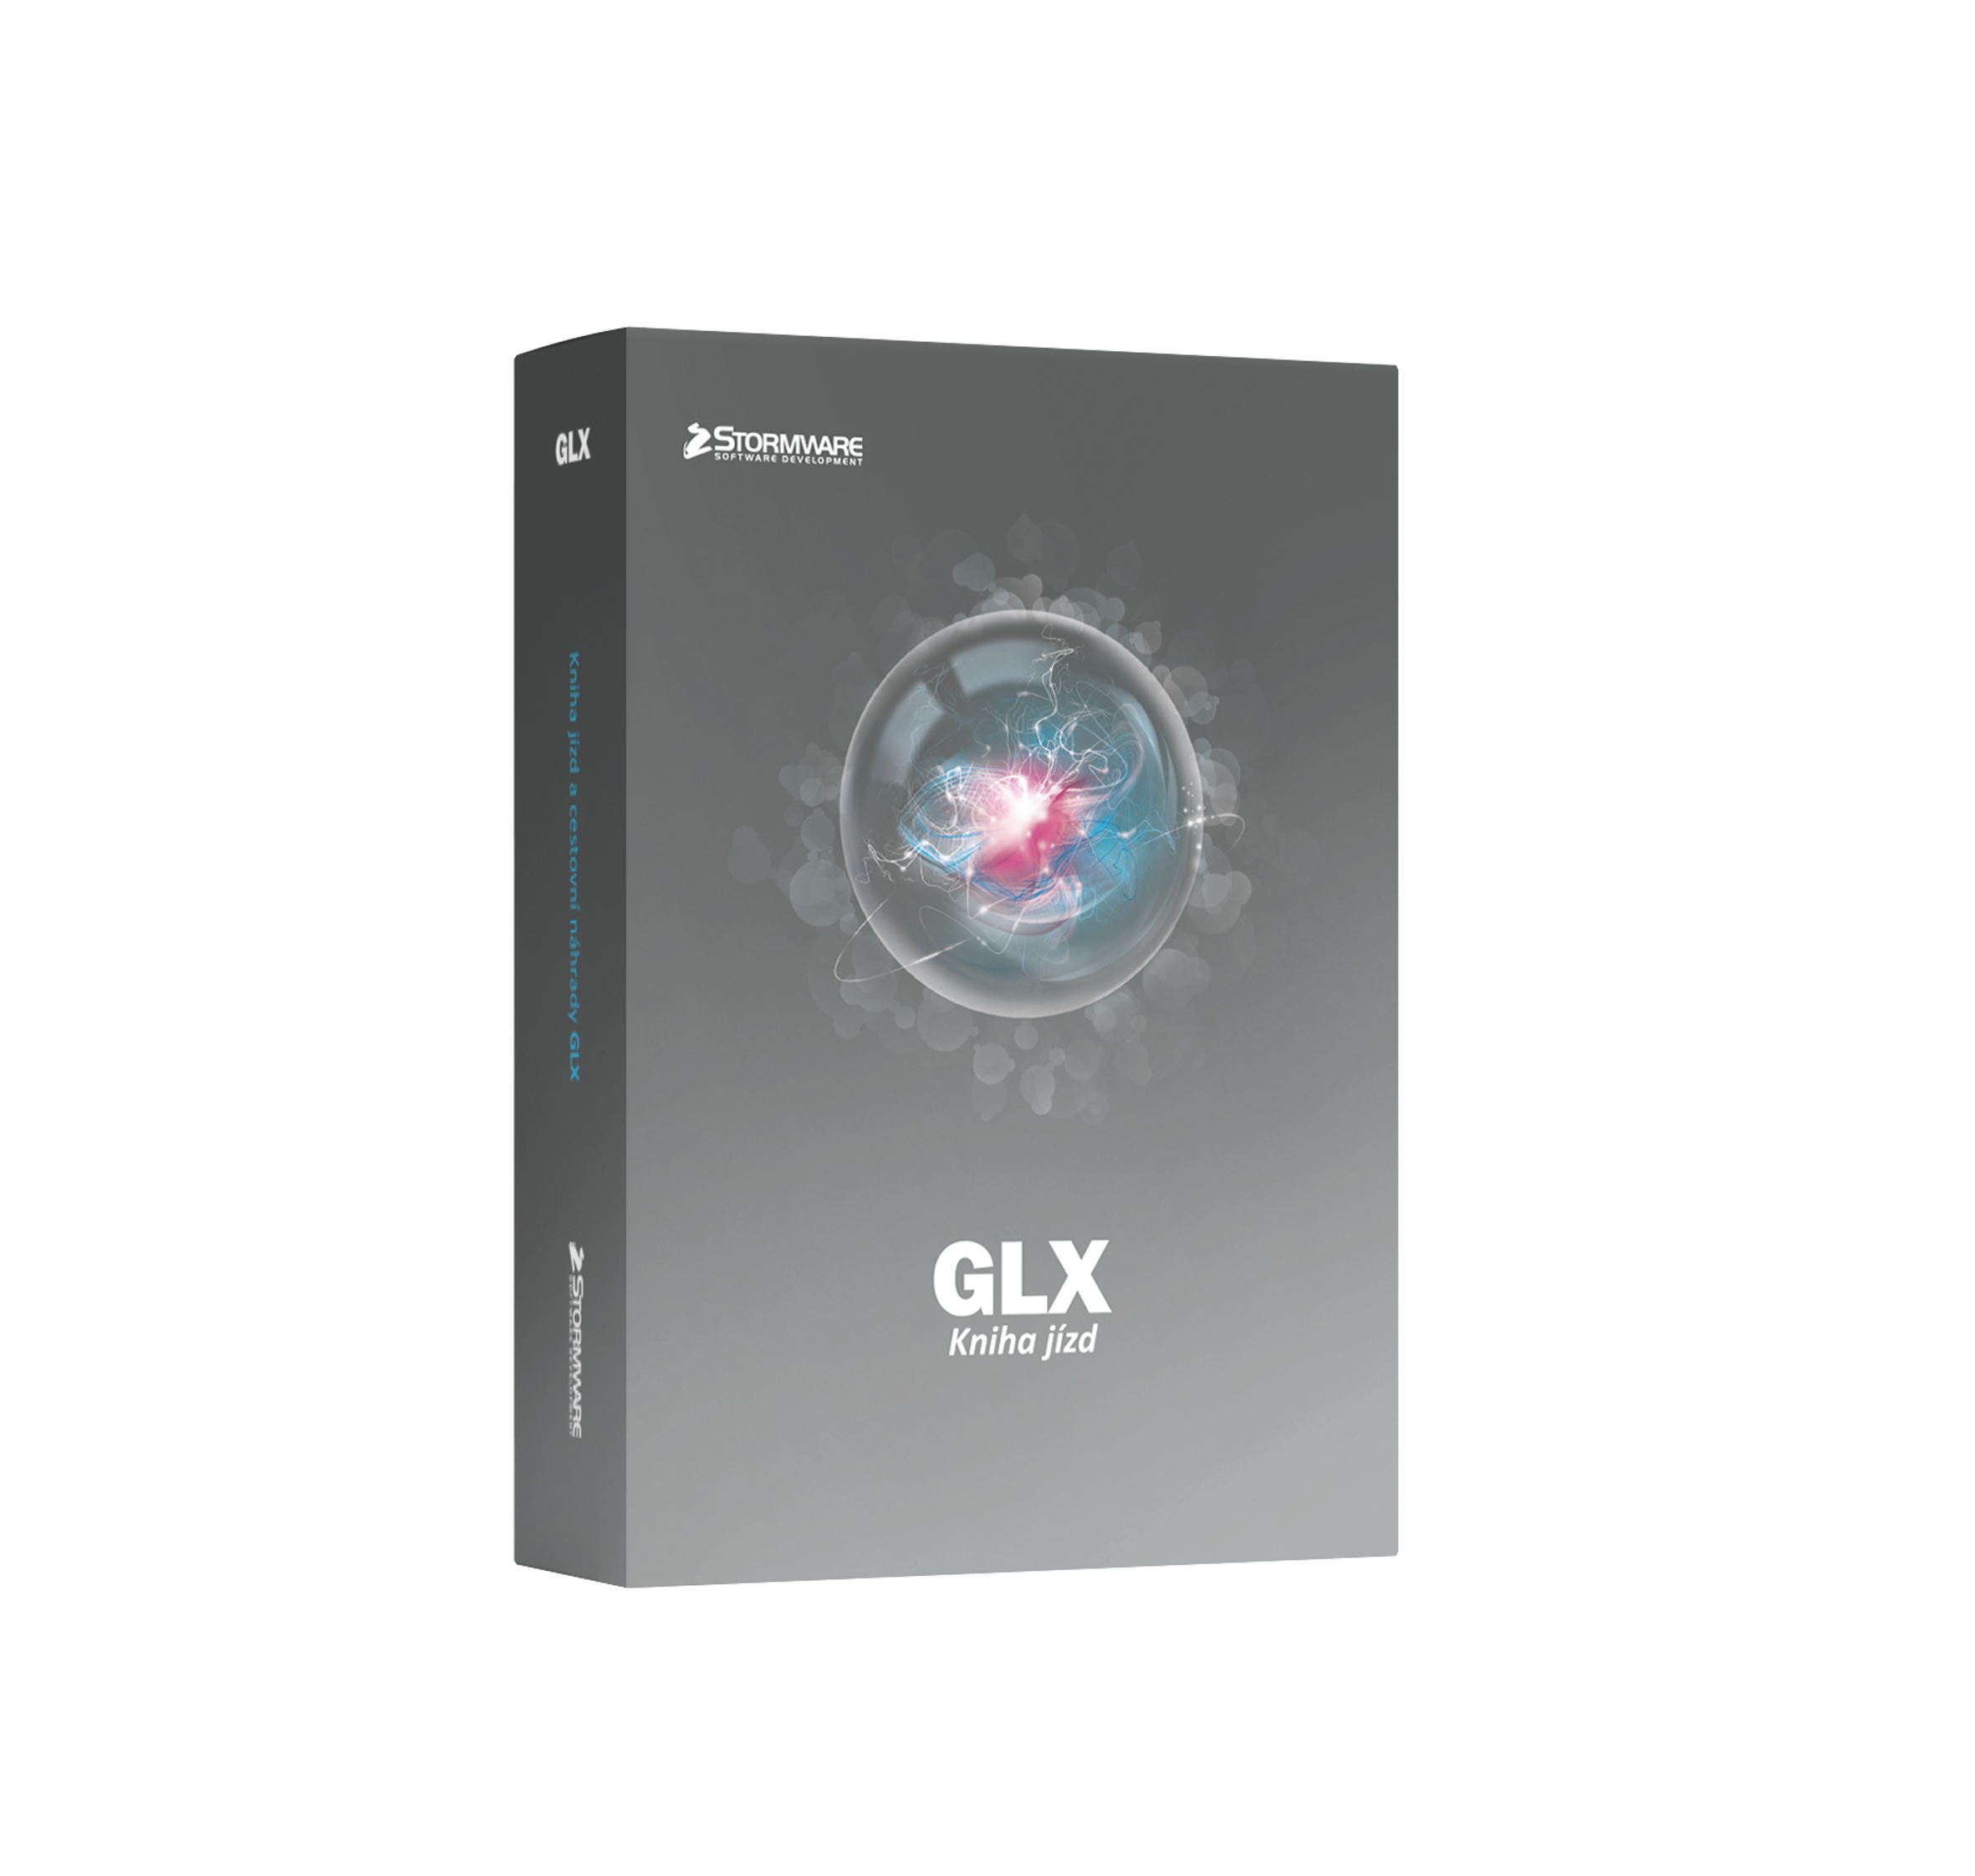 GLX - kniha jízd